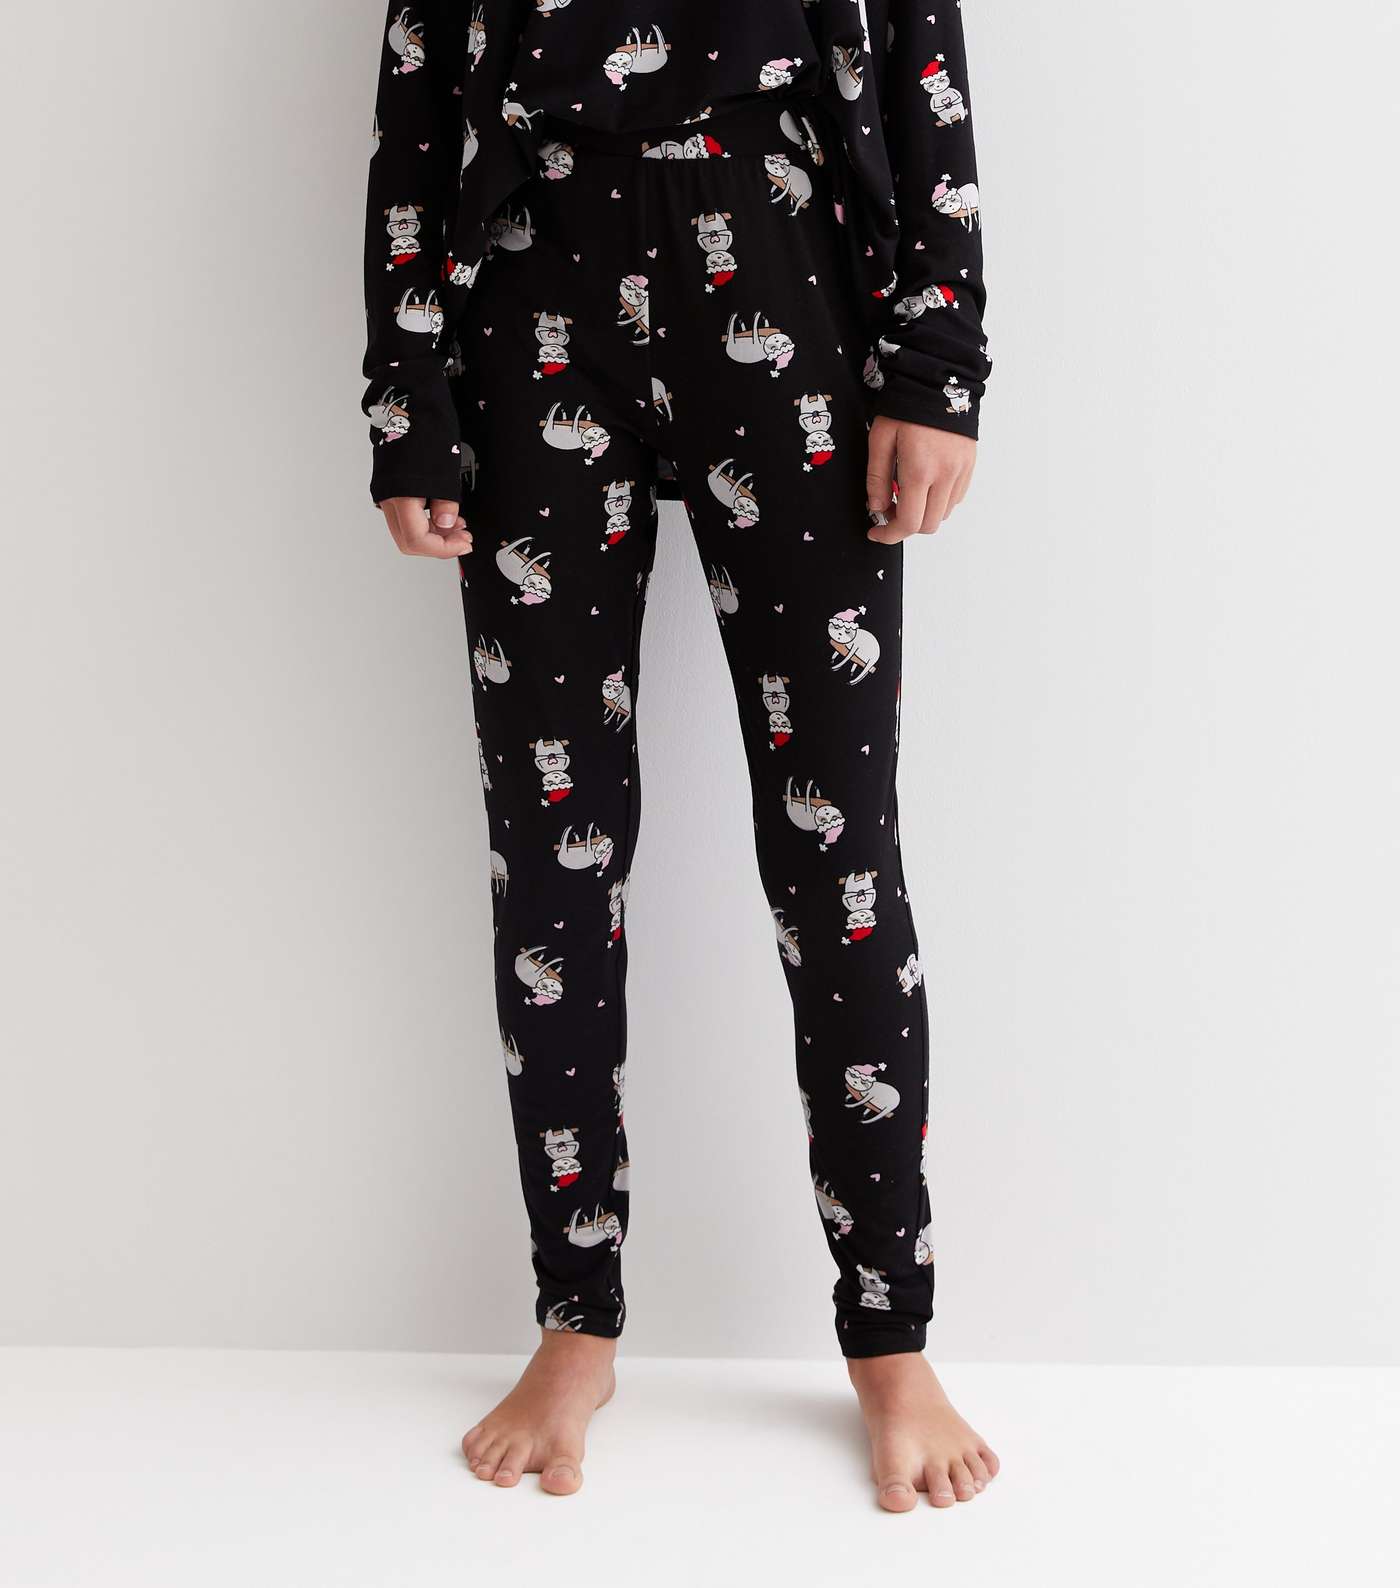 Girls Black Soft Touch Legging Pyjama Set with Christmas Sloth Image 4